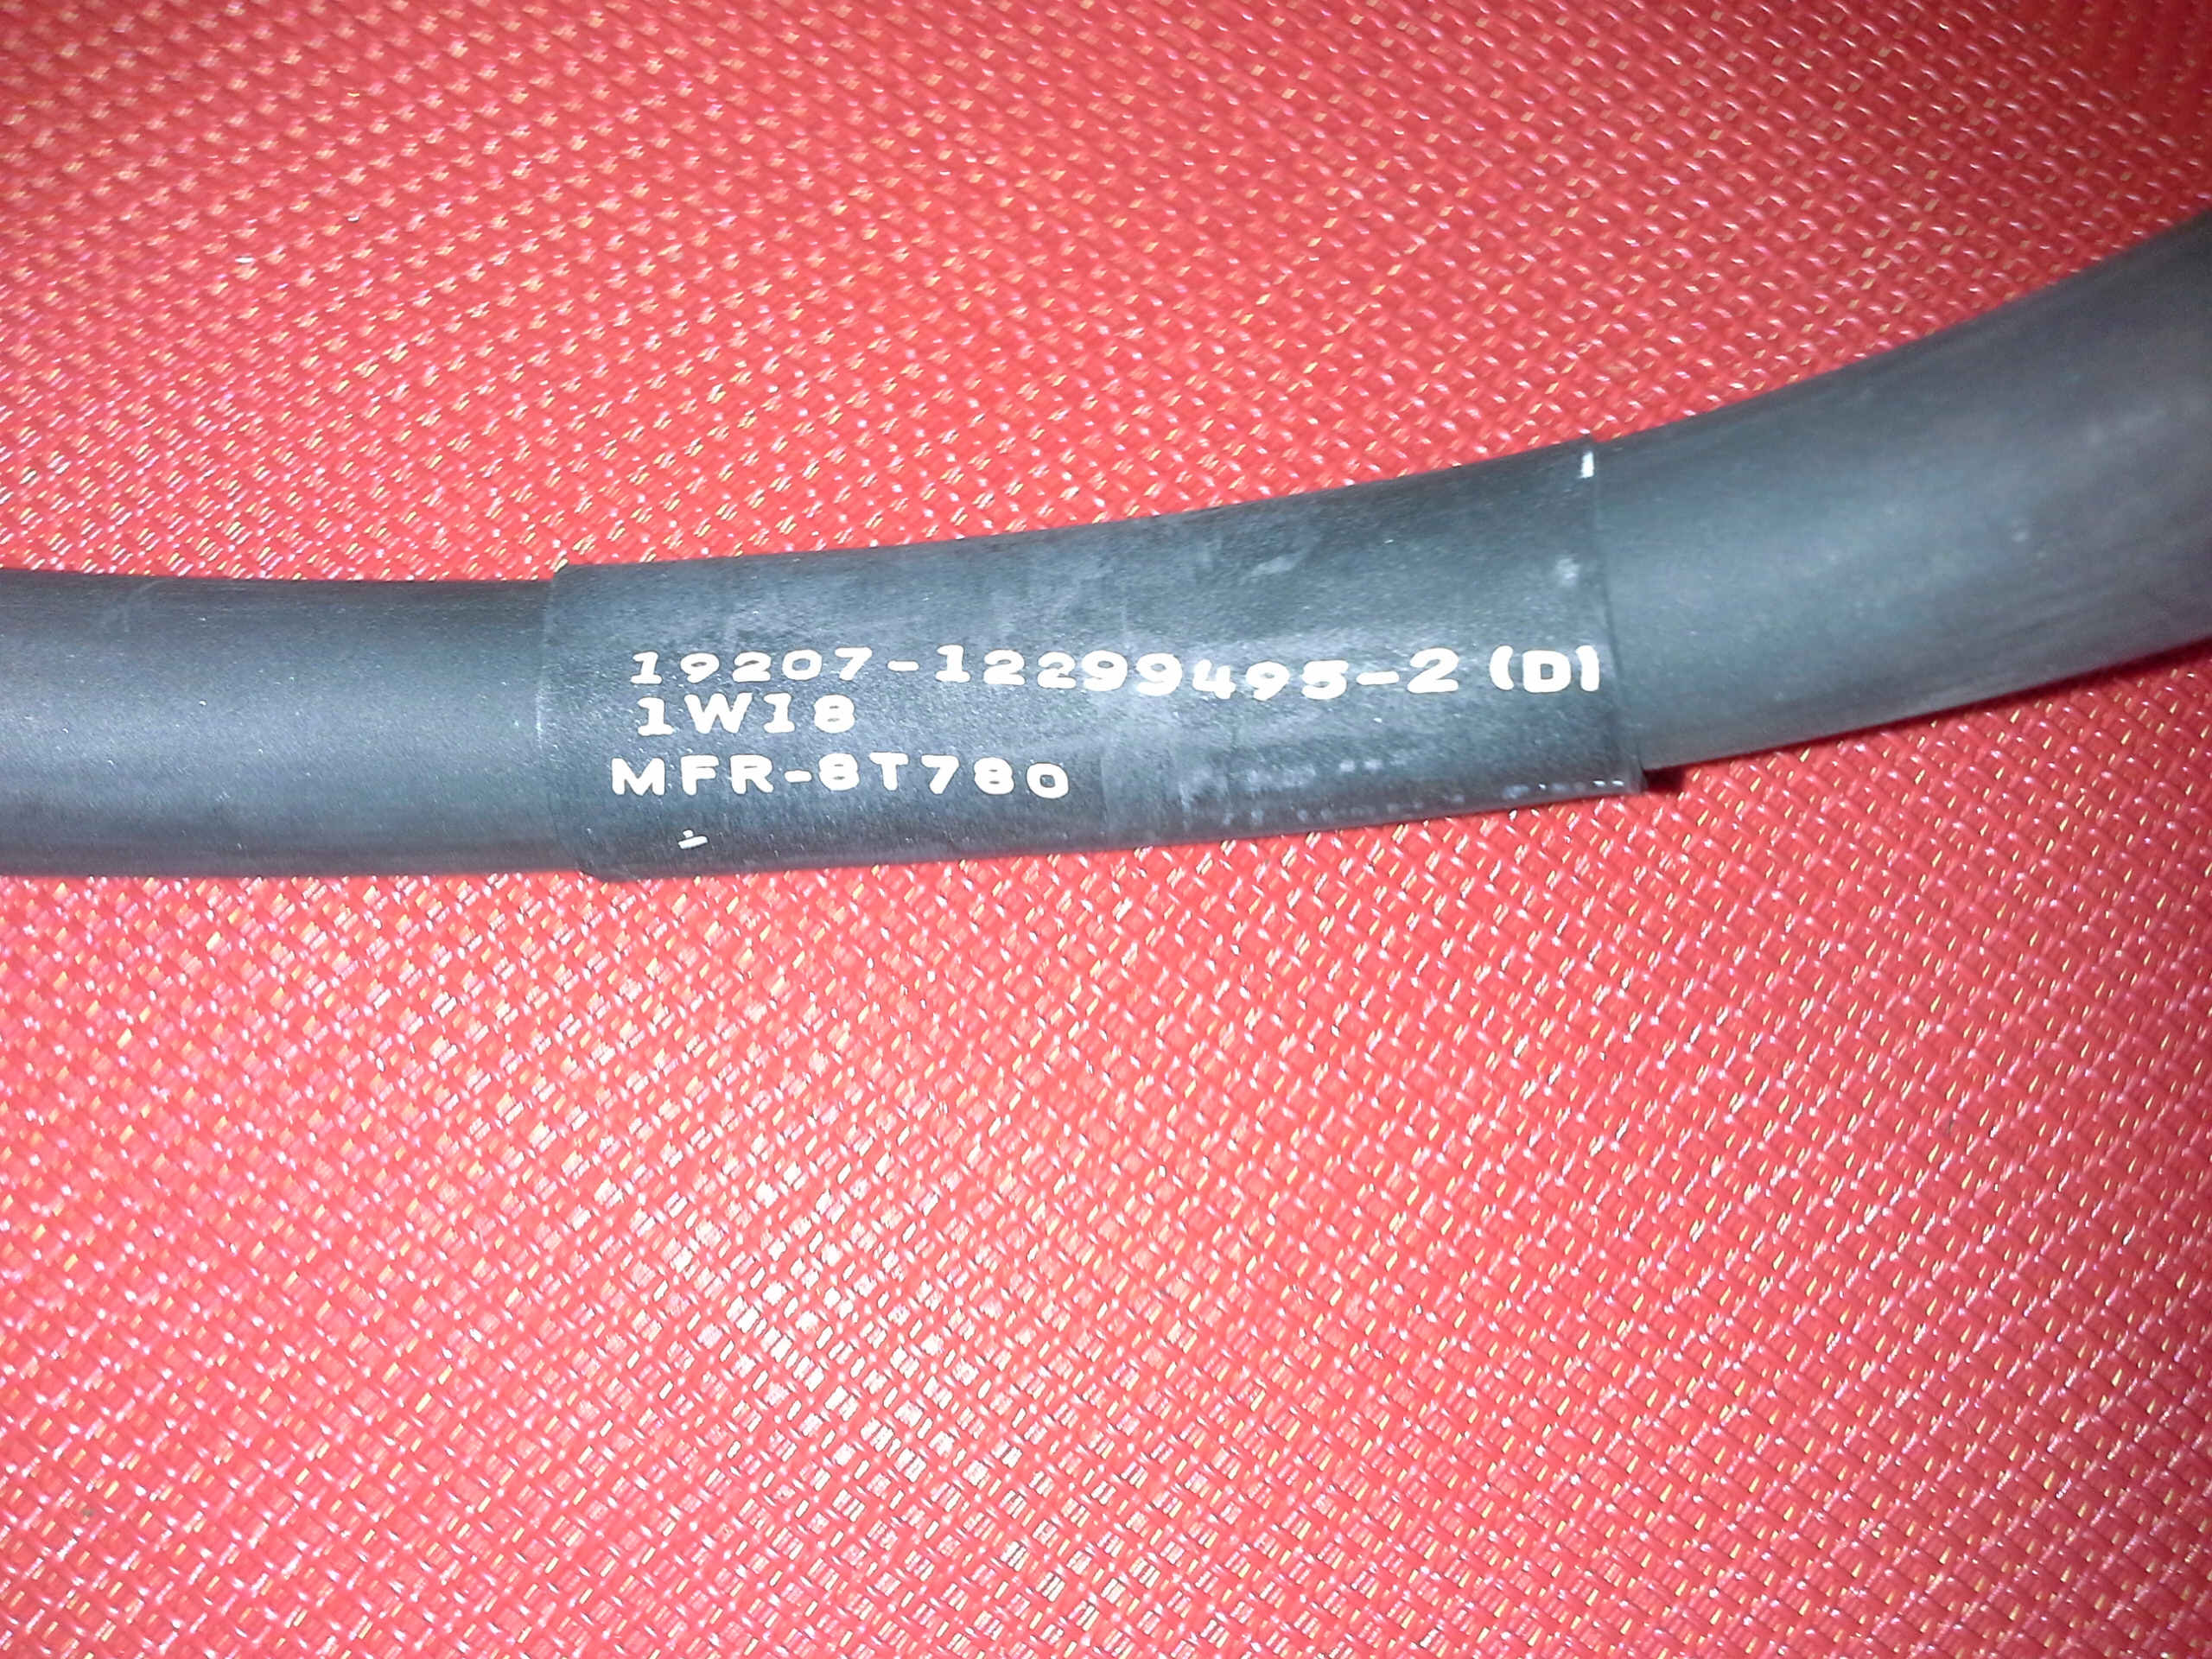 Erdungskabel MFR-8T780 – Länge 800 mm